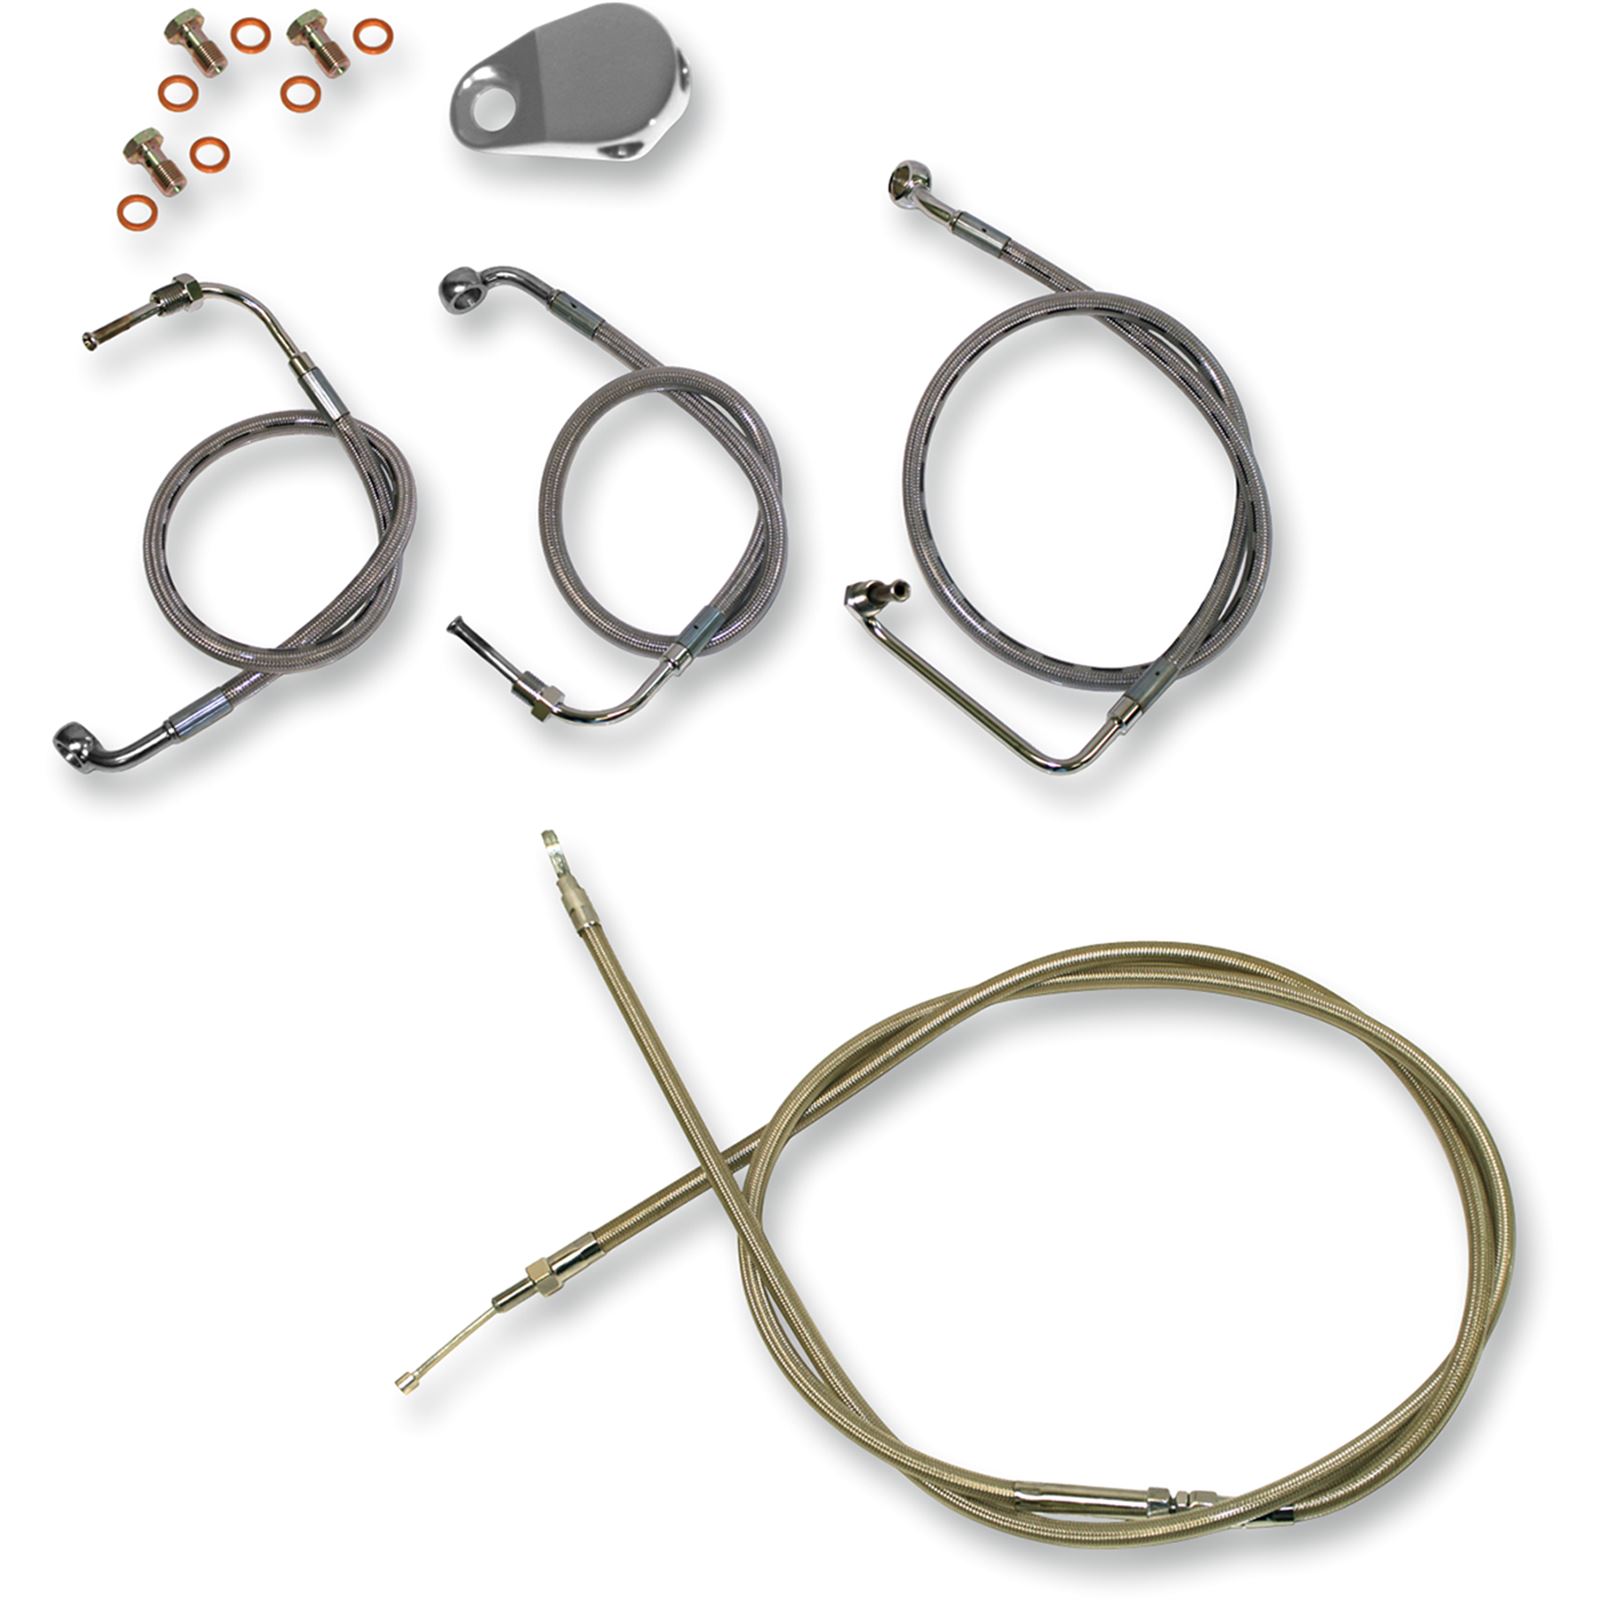 LA Choppers Standard Stainless Braided Handlebar Cable/Brake Line Kit For Mini Ape Hanger Handlebars